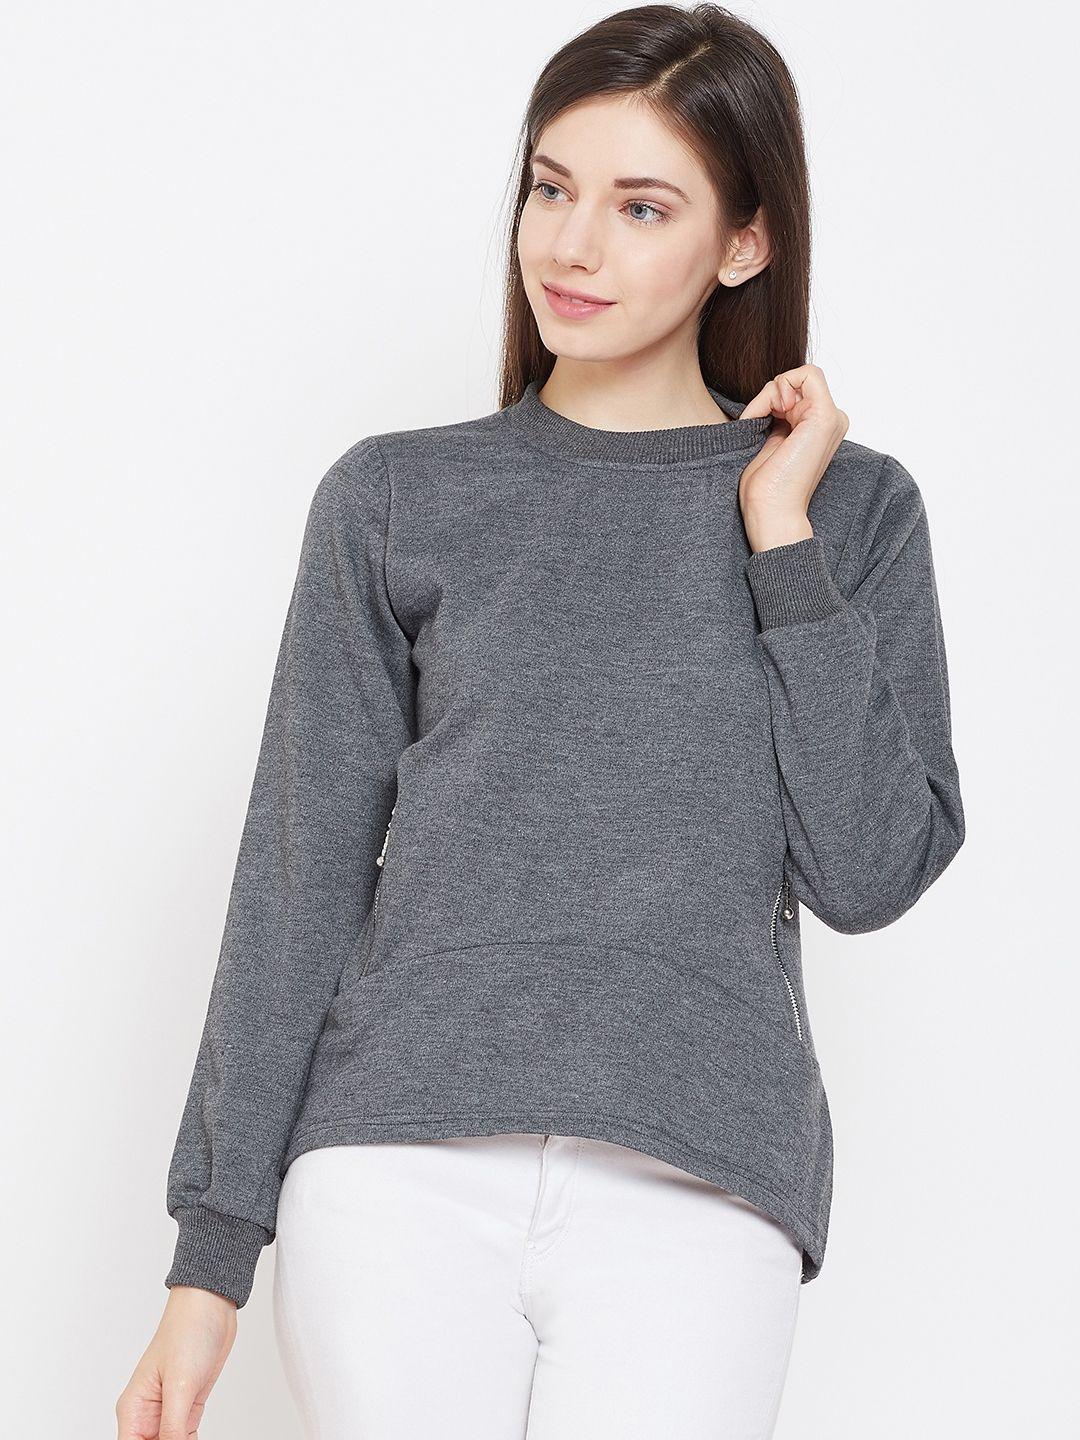 belle-fille-women-charcoal-grey-solid-sweatshirt